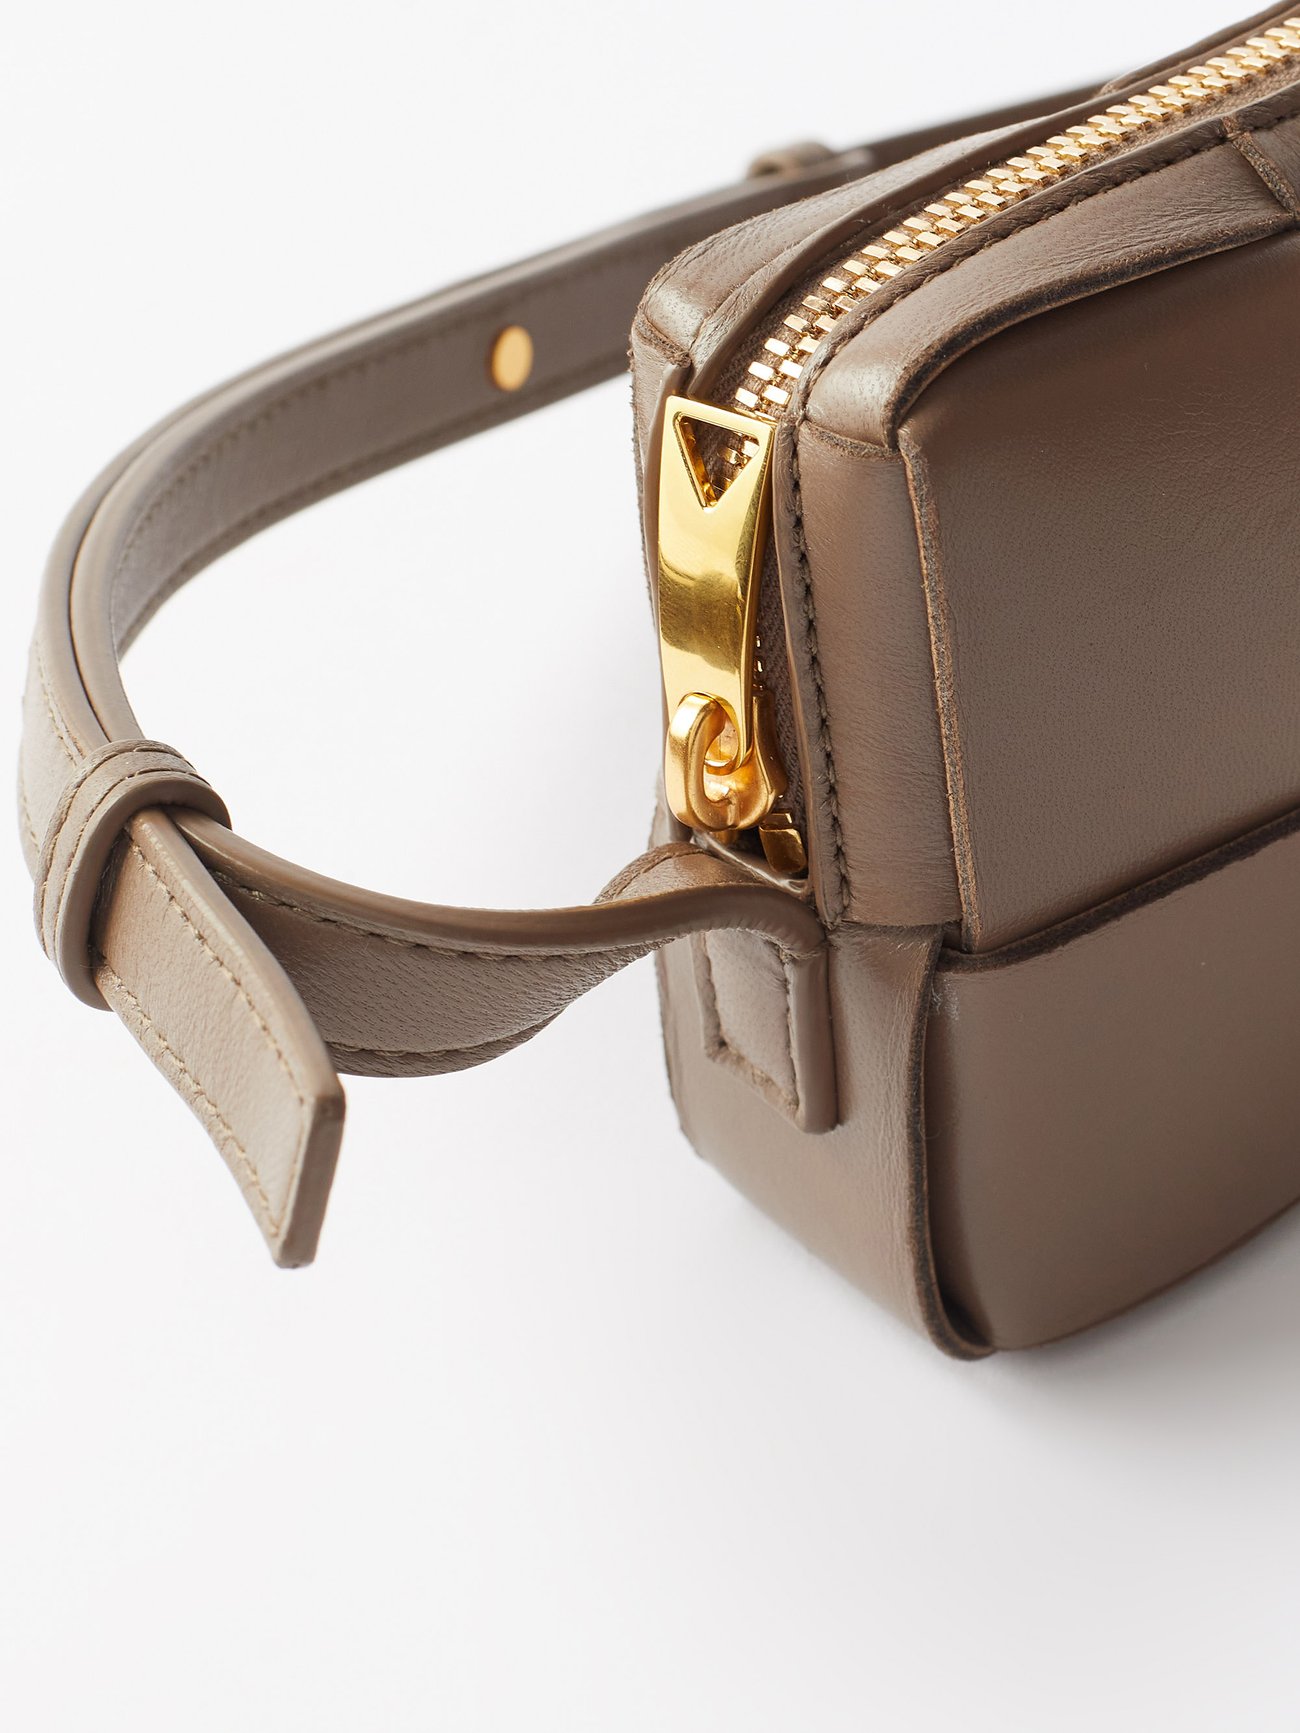 Intrecciato Leather Phone Pouch in Brown - Bottega Veneta